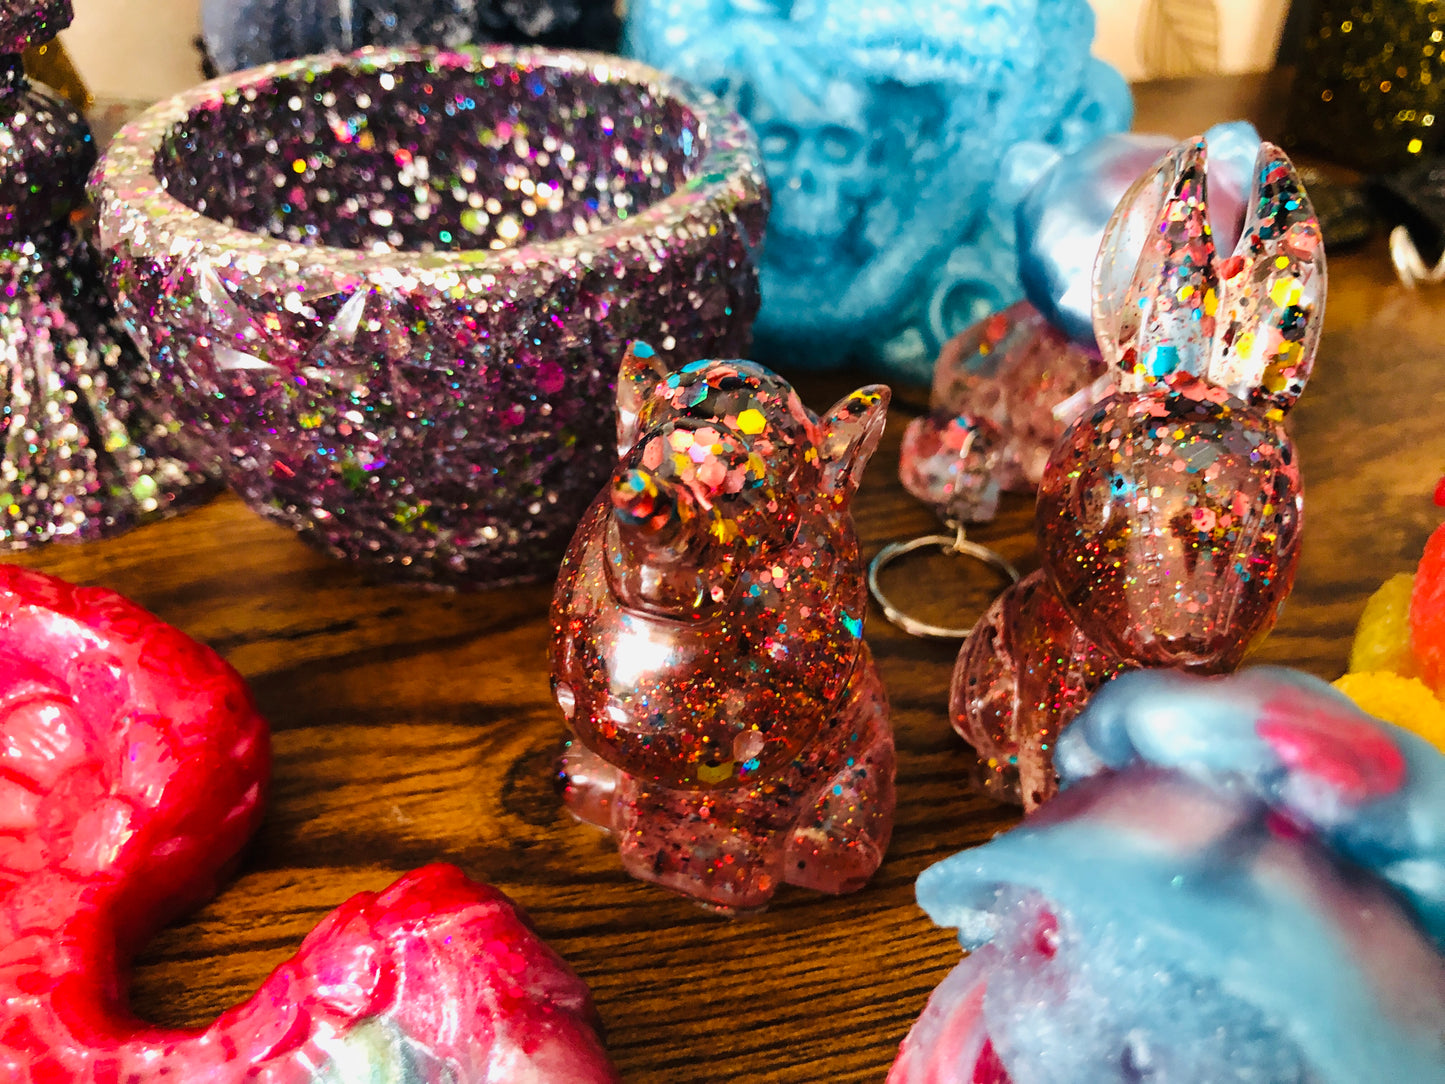 The Gorgeous Glitter & Rainbow Resin Collection 🌈 STUNNING STUFF